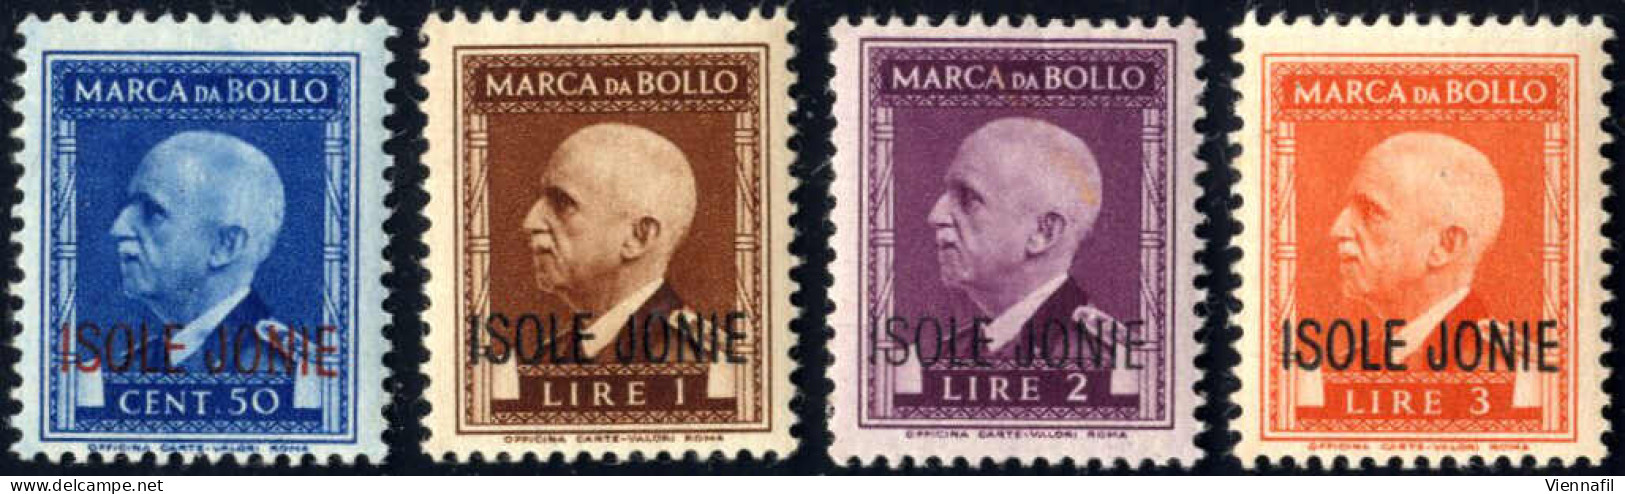 ** 1941, Marche Da Bollo Con Effigie Di VE III Con Soprastampa "ISOLE JONIE", Serie Di 8 Valori Da 50 C. A 50 L. Nuovi C - Îles Ioniennes